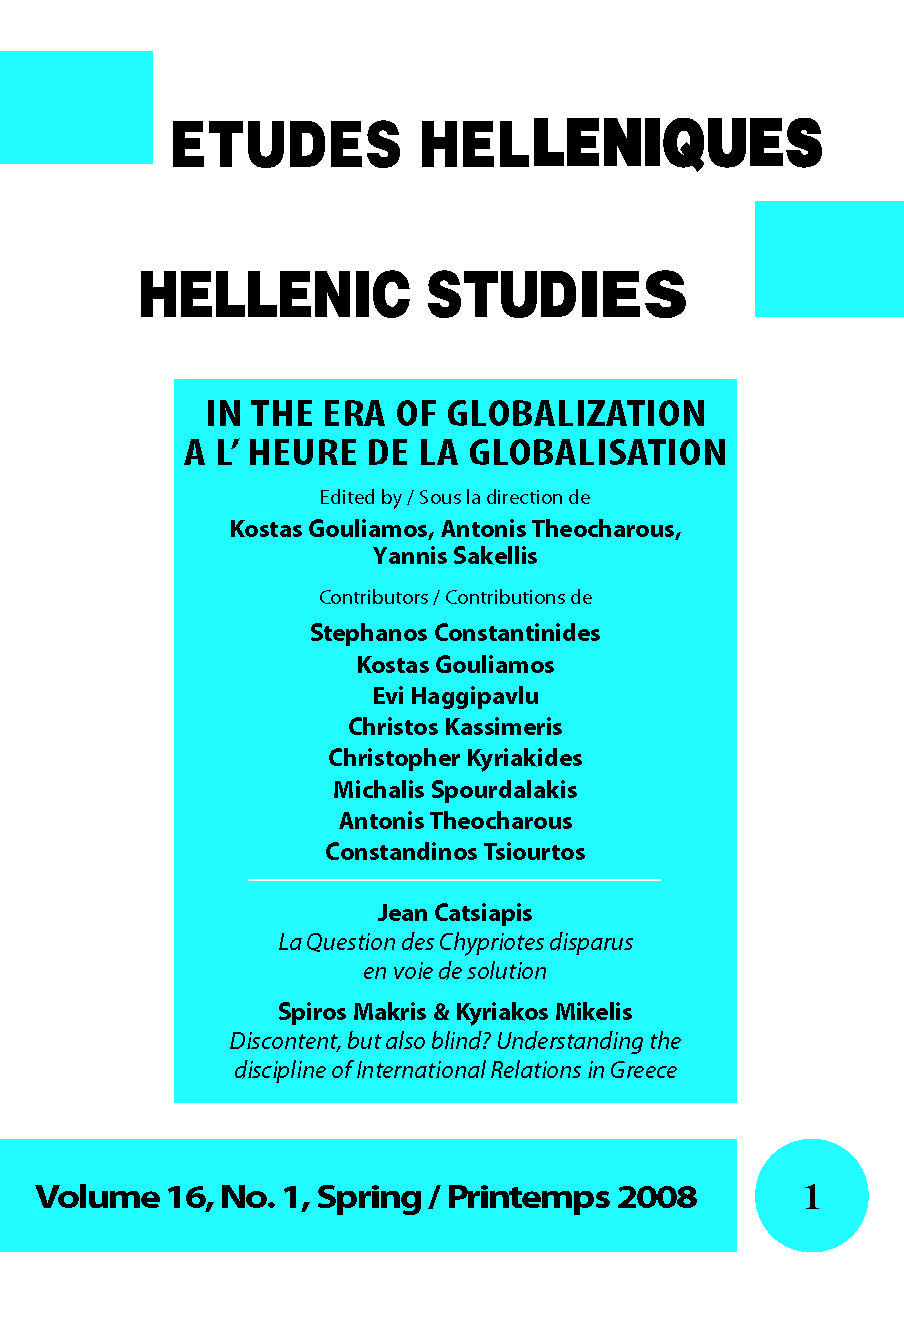 Études helléniques / Hellenic Studies, Volume 16, No 1, 2008, cover